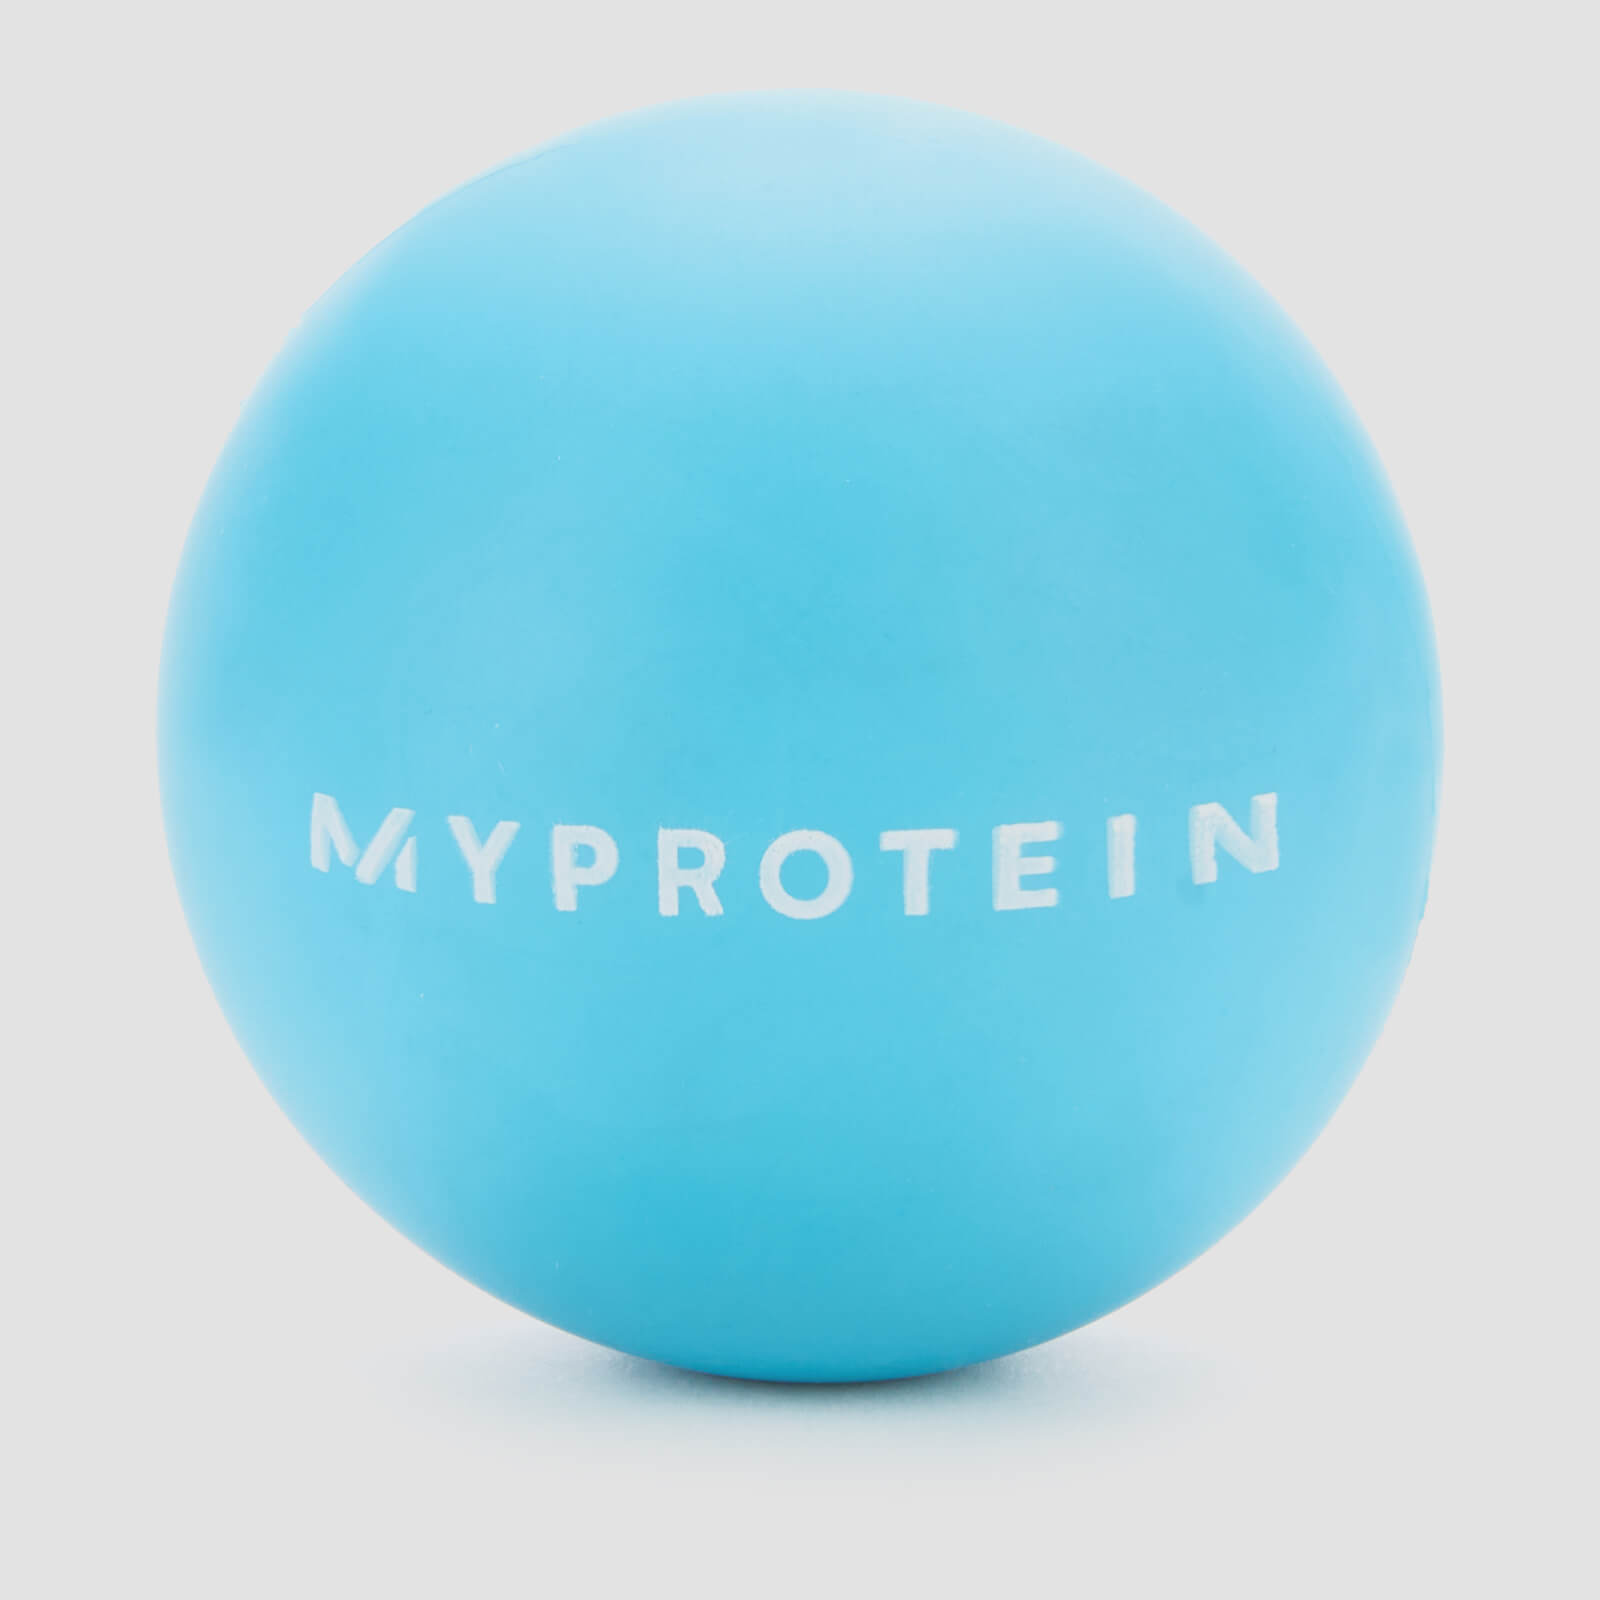 Myprotein Massage Ball